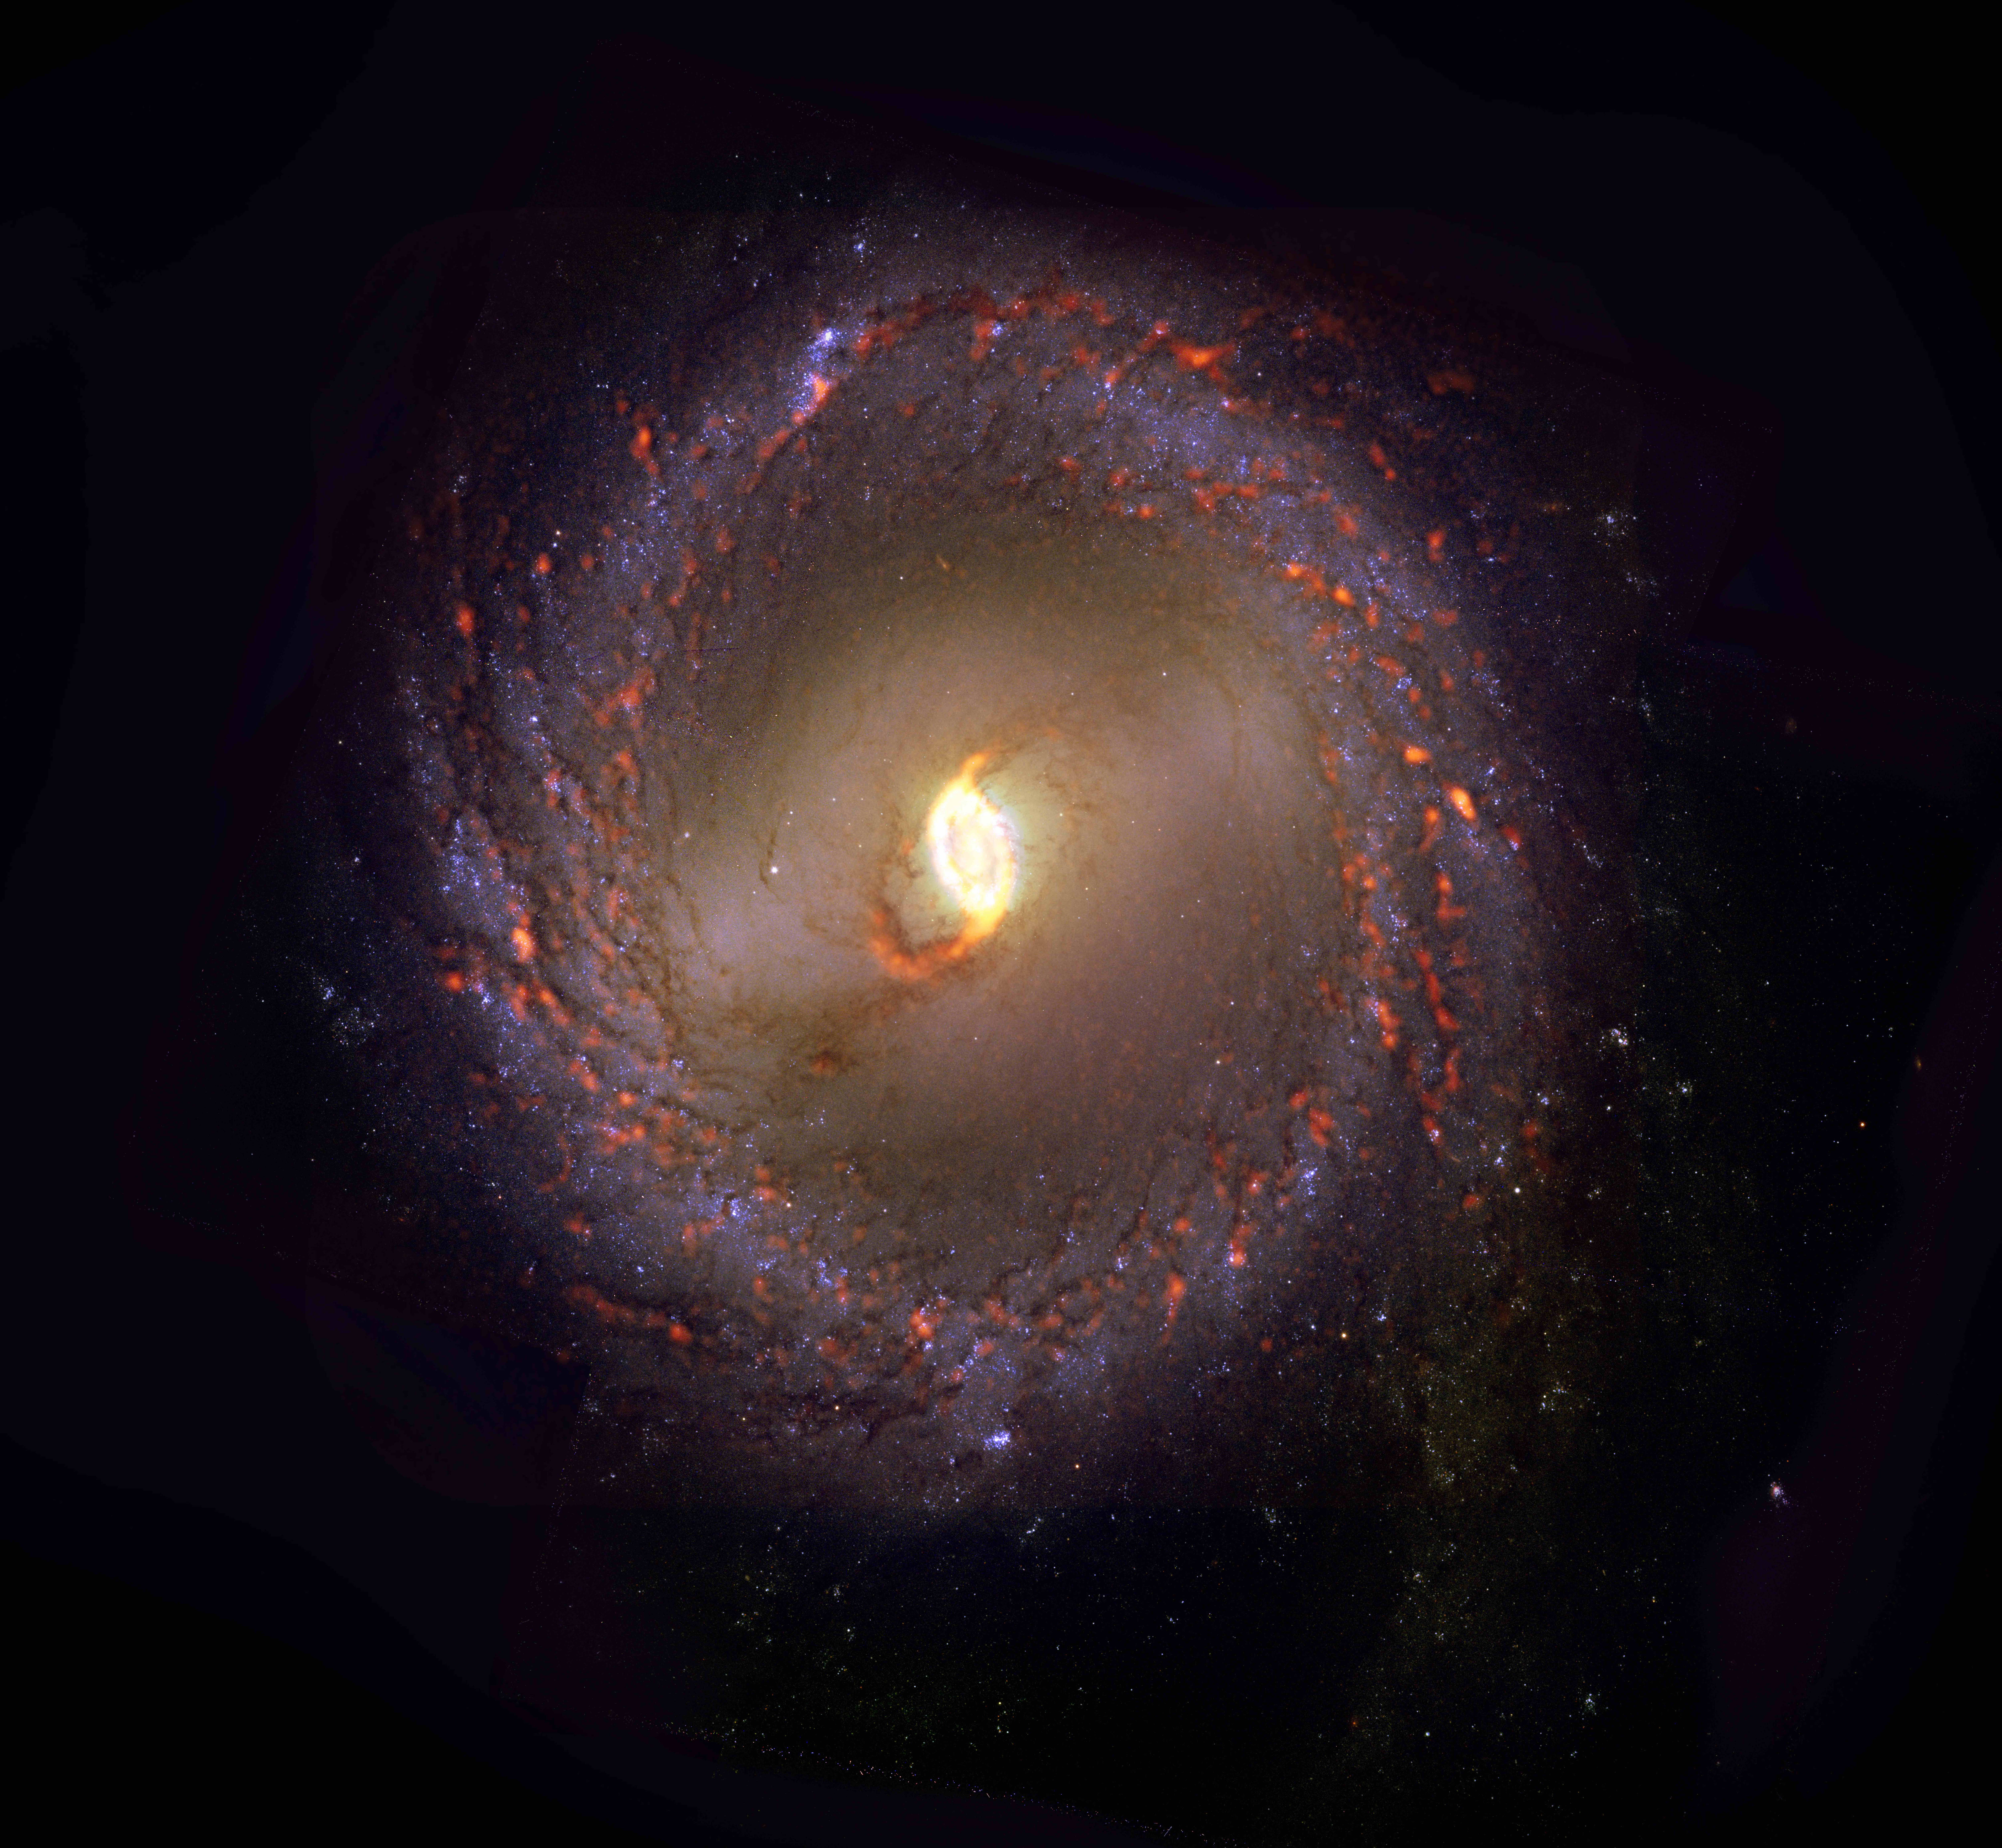 PHANGS-ALMA Survey: NGC3351